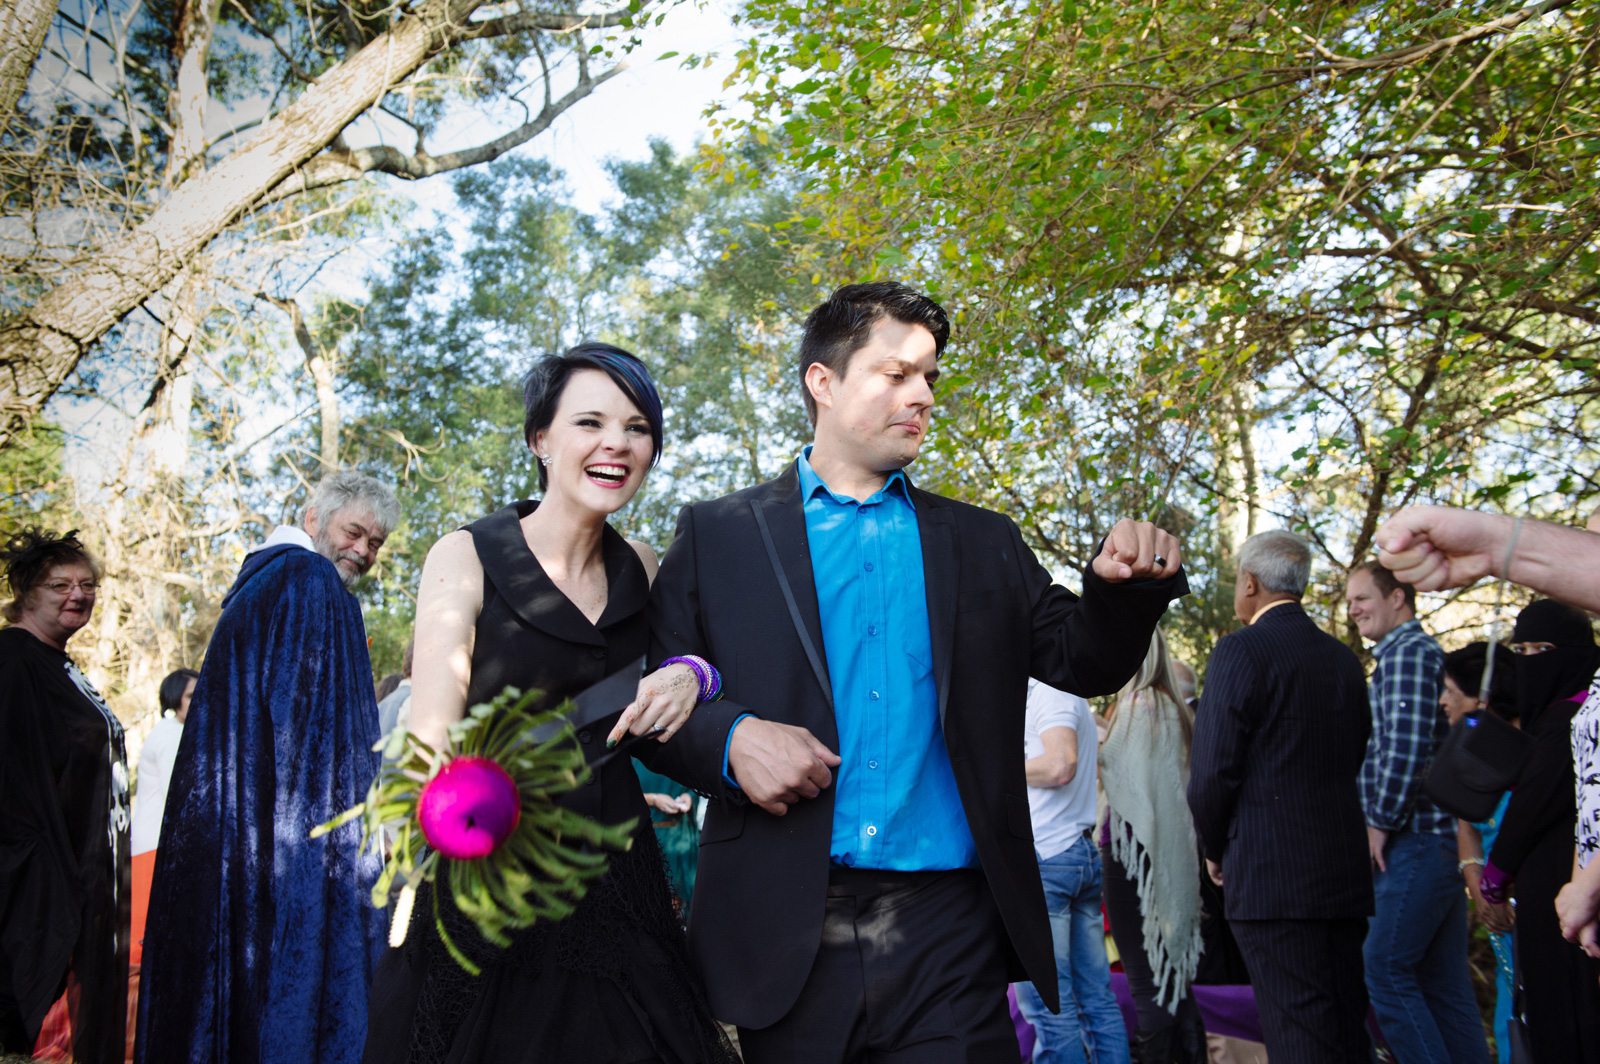 bride in black dress and groom